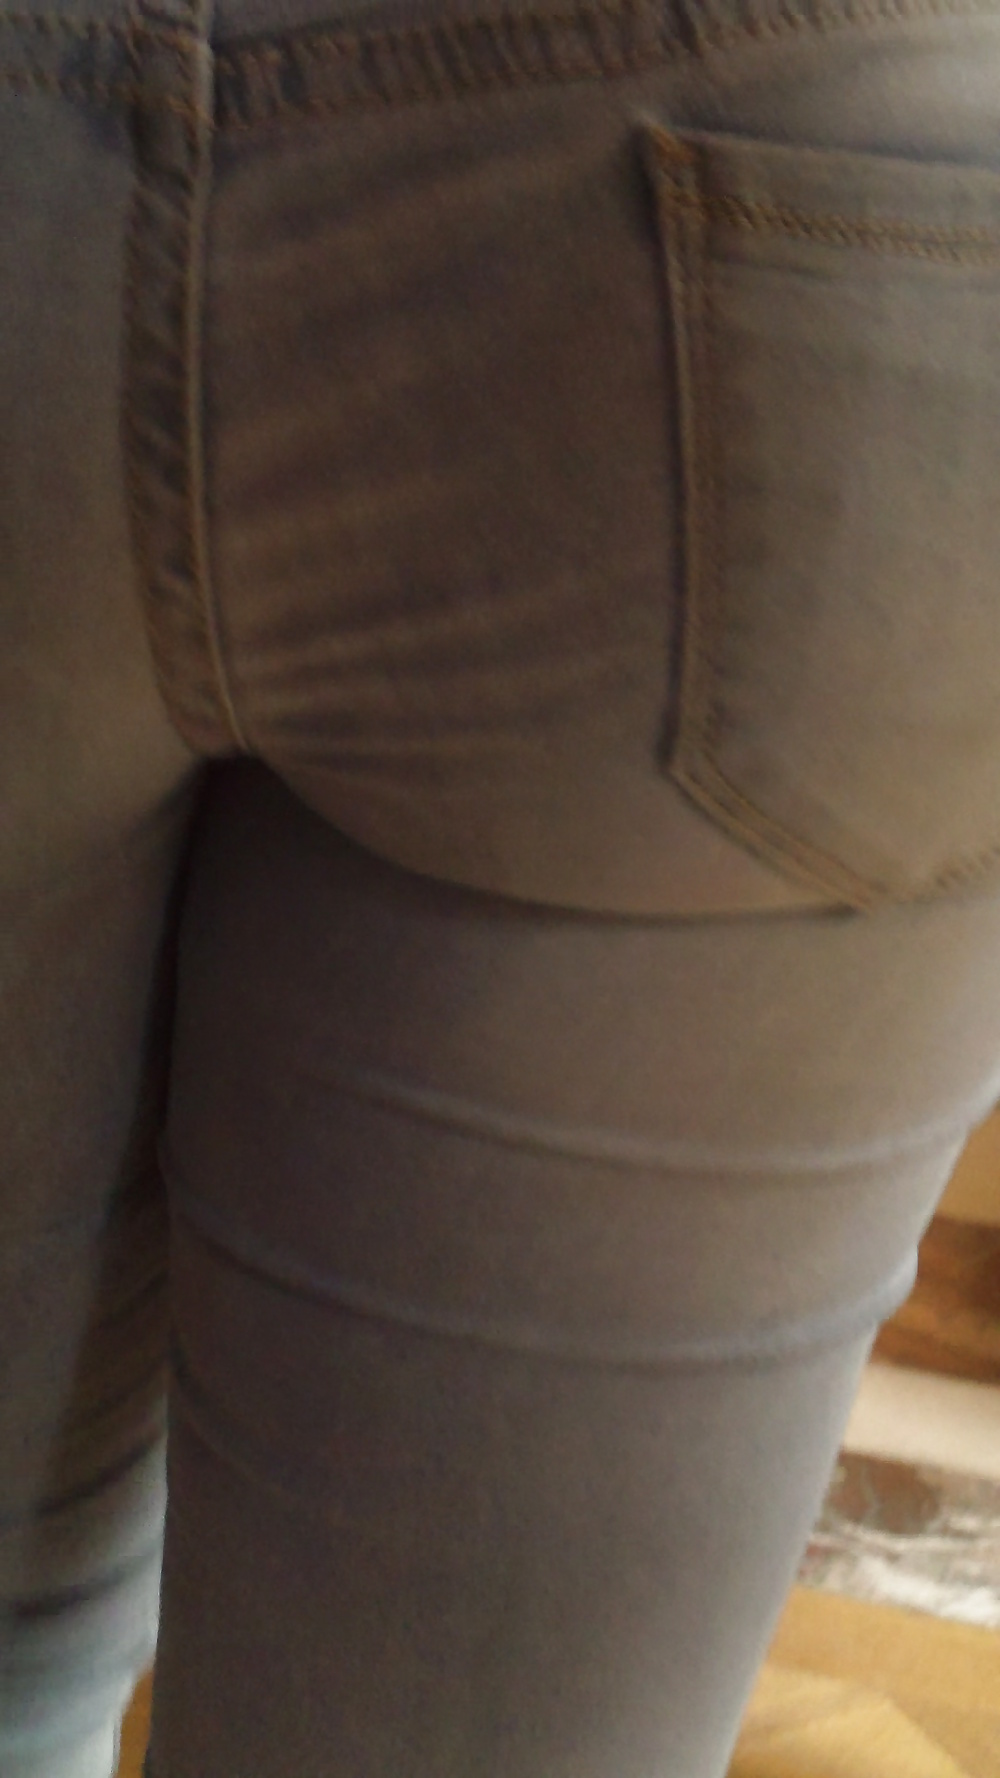 Popular teen girls ass & butt in jeans Part 6 #32010201